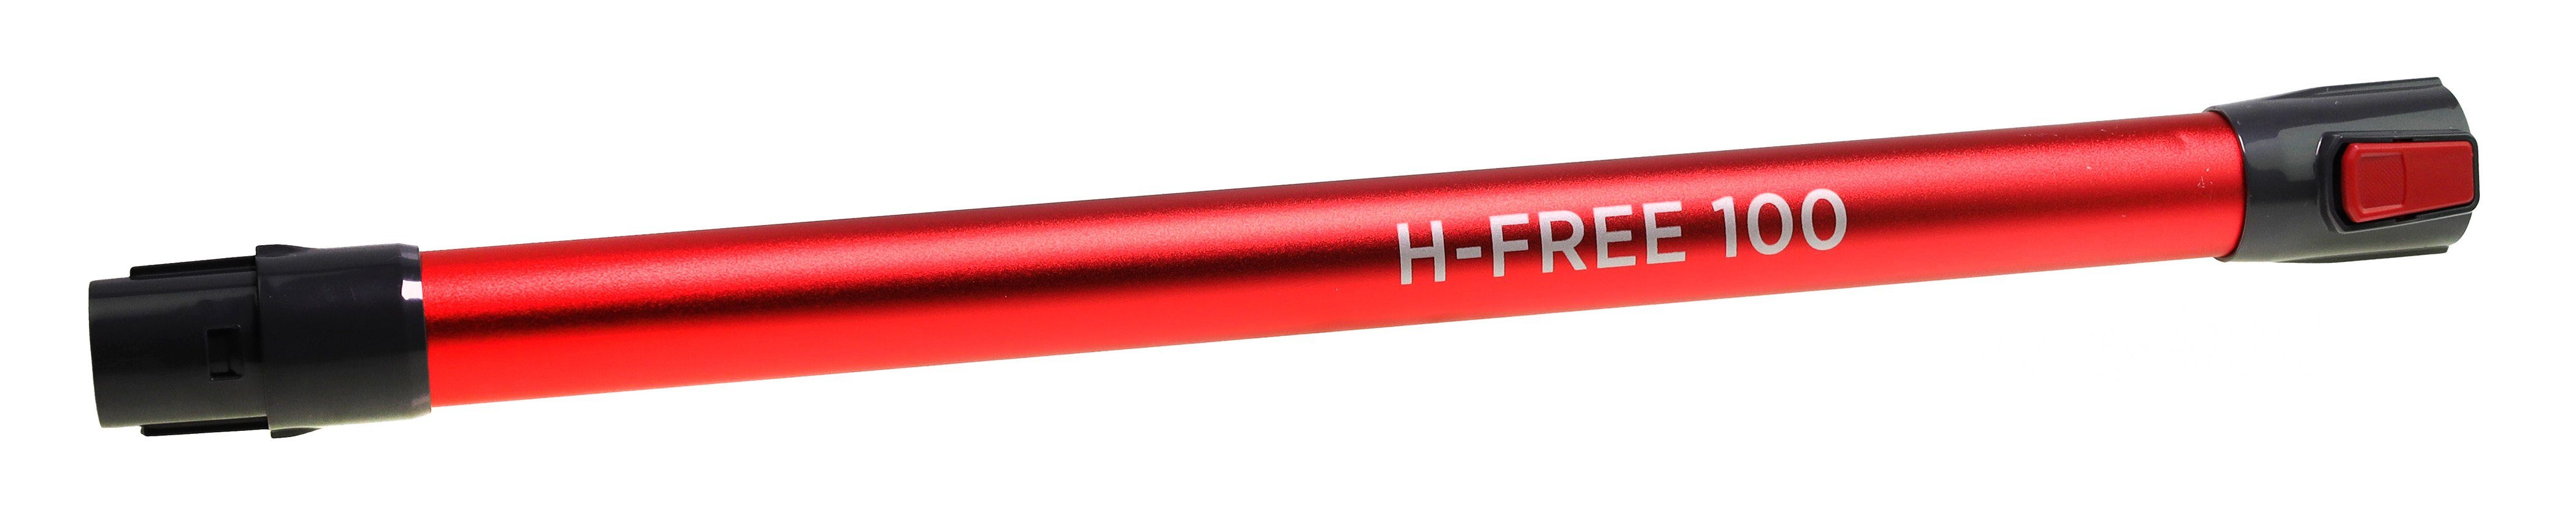 H-Free HF122 100 Staubsaugerrohr Akku-Handstaubsauger 48030132 Hoover Hoover für Saugrohr